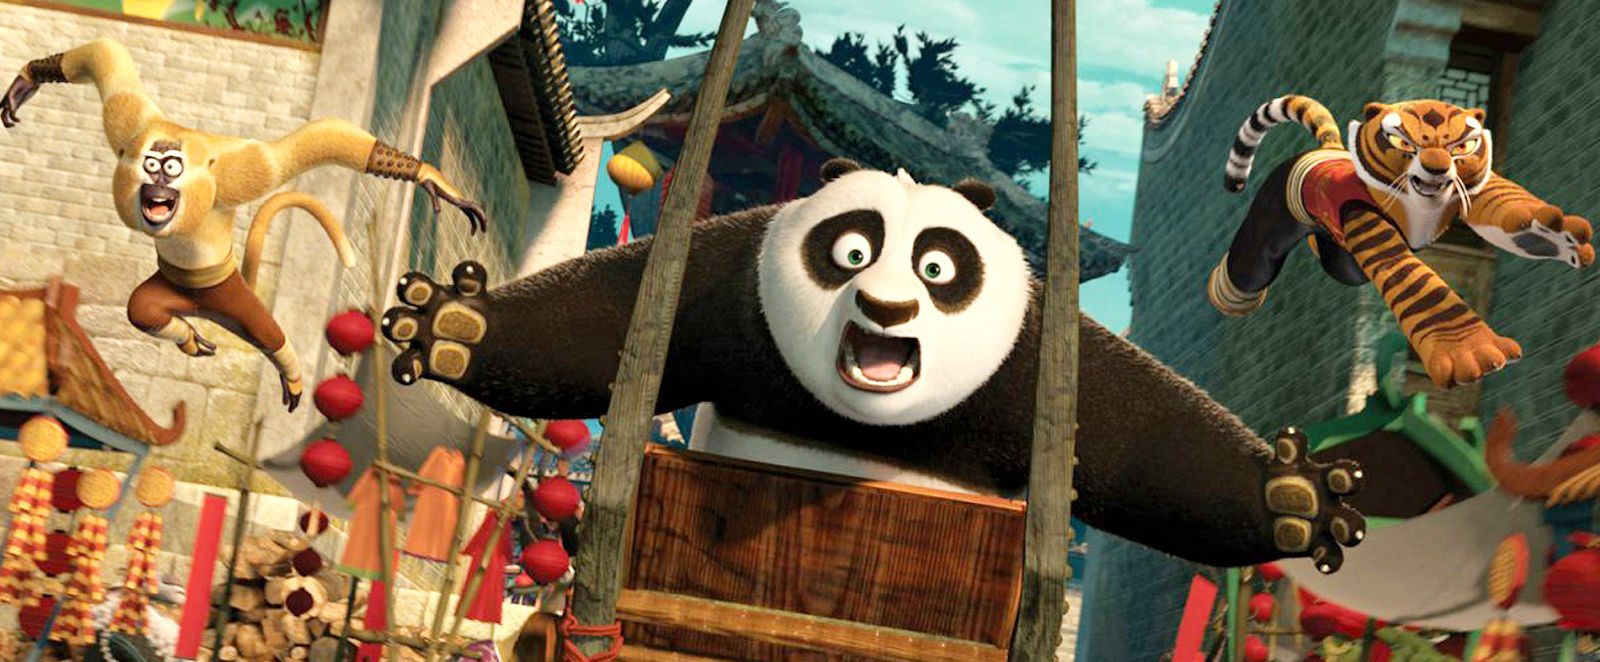 MINI CRÍTICAS: La trilogía “Kung Fu Panda”